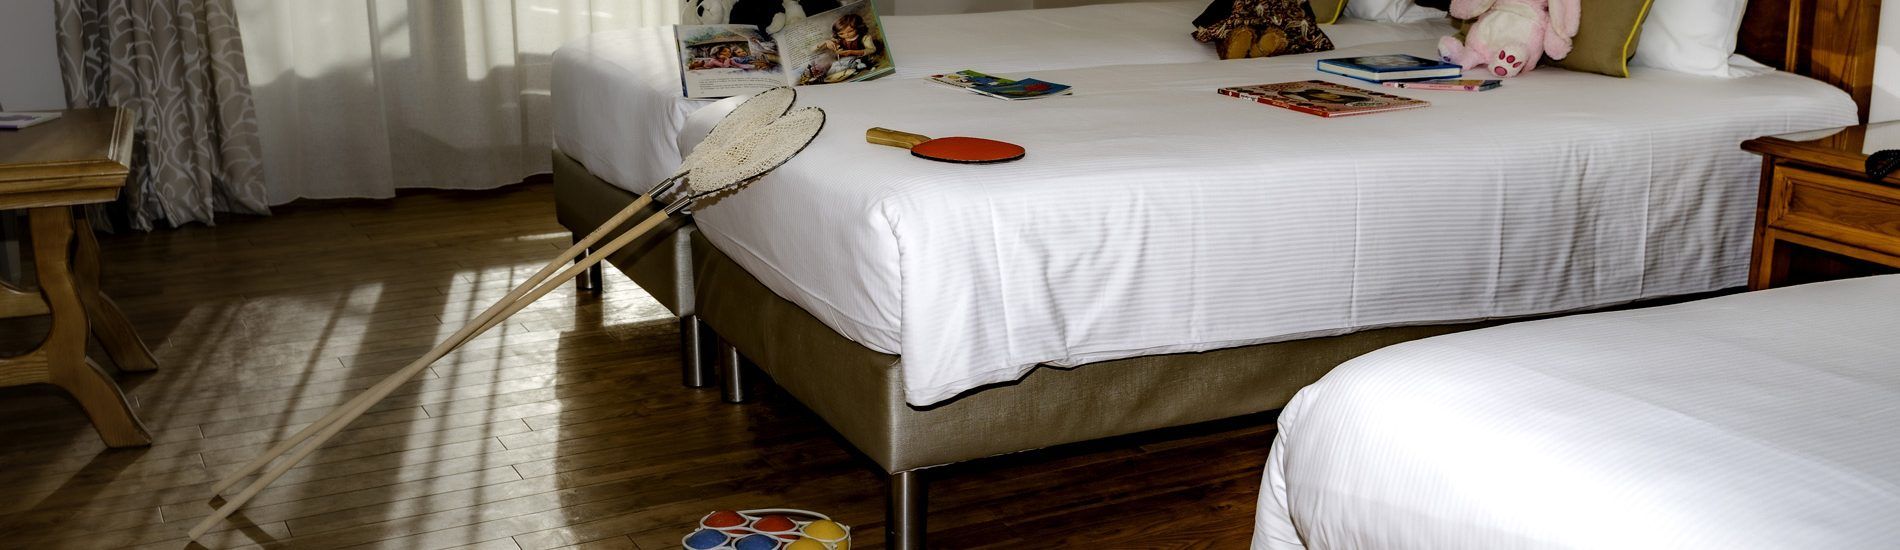 Chambre de l'hôtel avec épuisette sur le lit